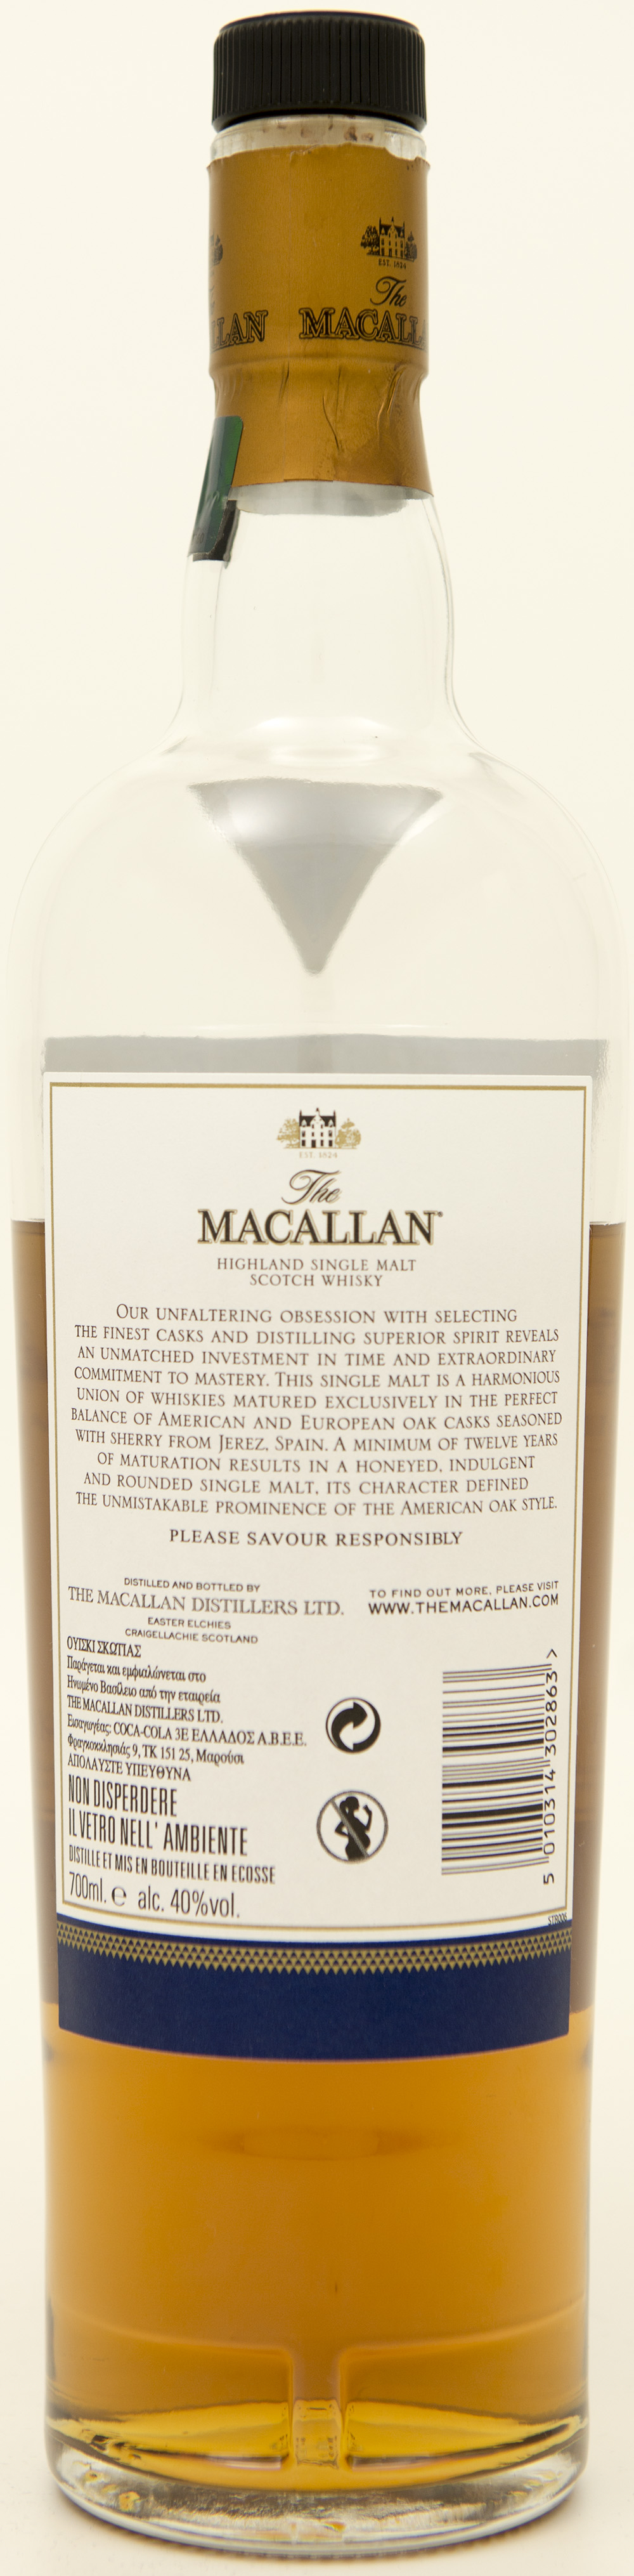 Billede: DSC_3654 - The MacAllan 12 Double Cask - bottle back.jpg